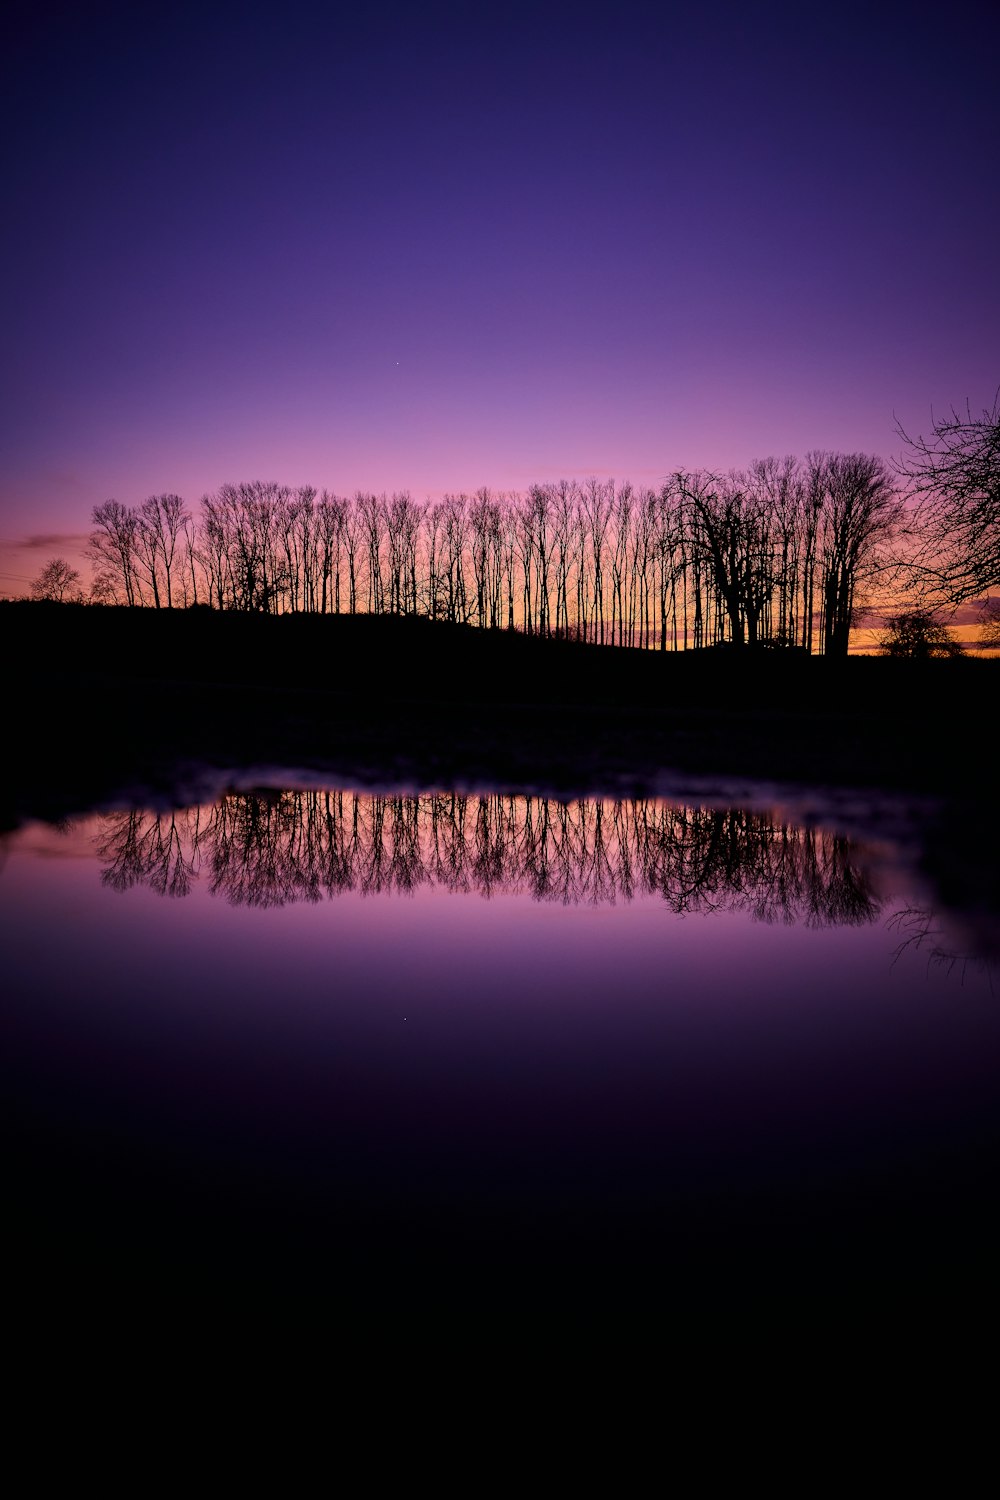 Ein violetter Himmel mit Bäumen, die sich im Wasser spiegeln